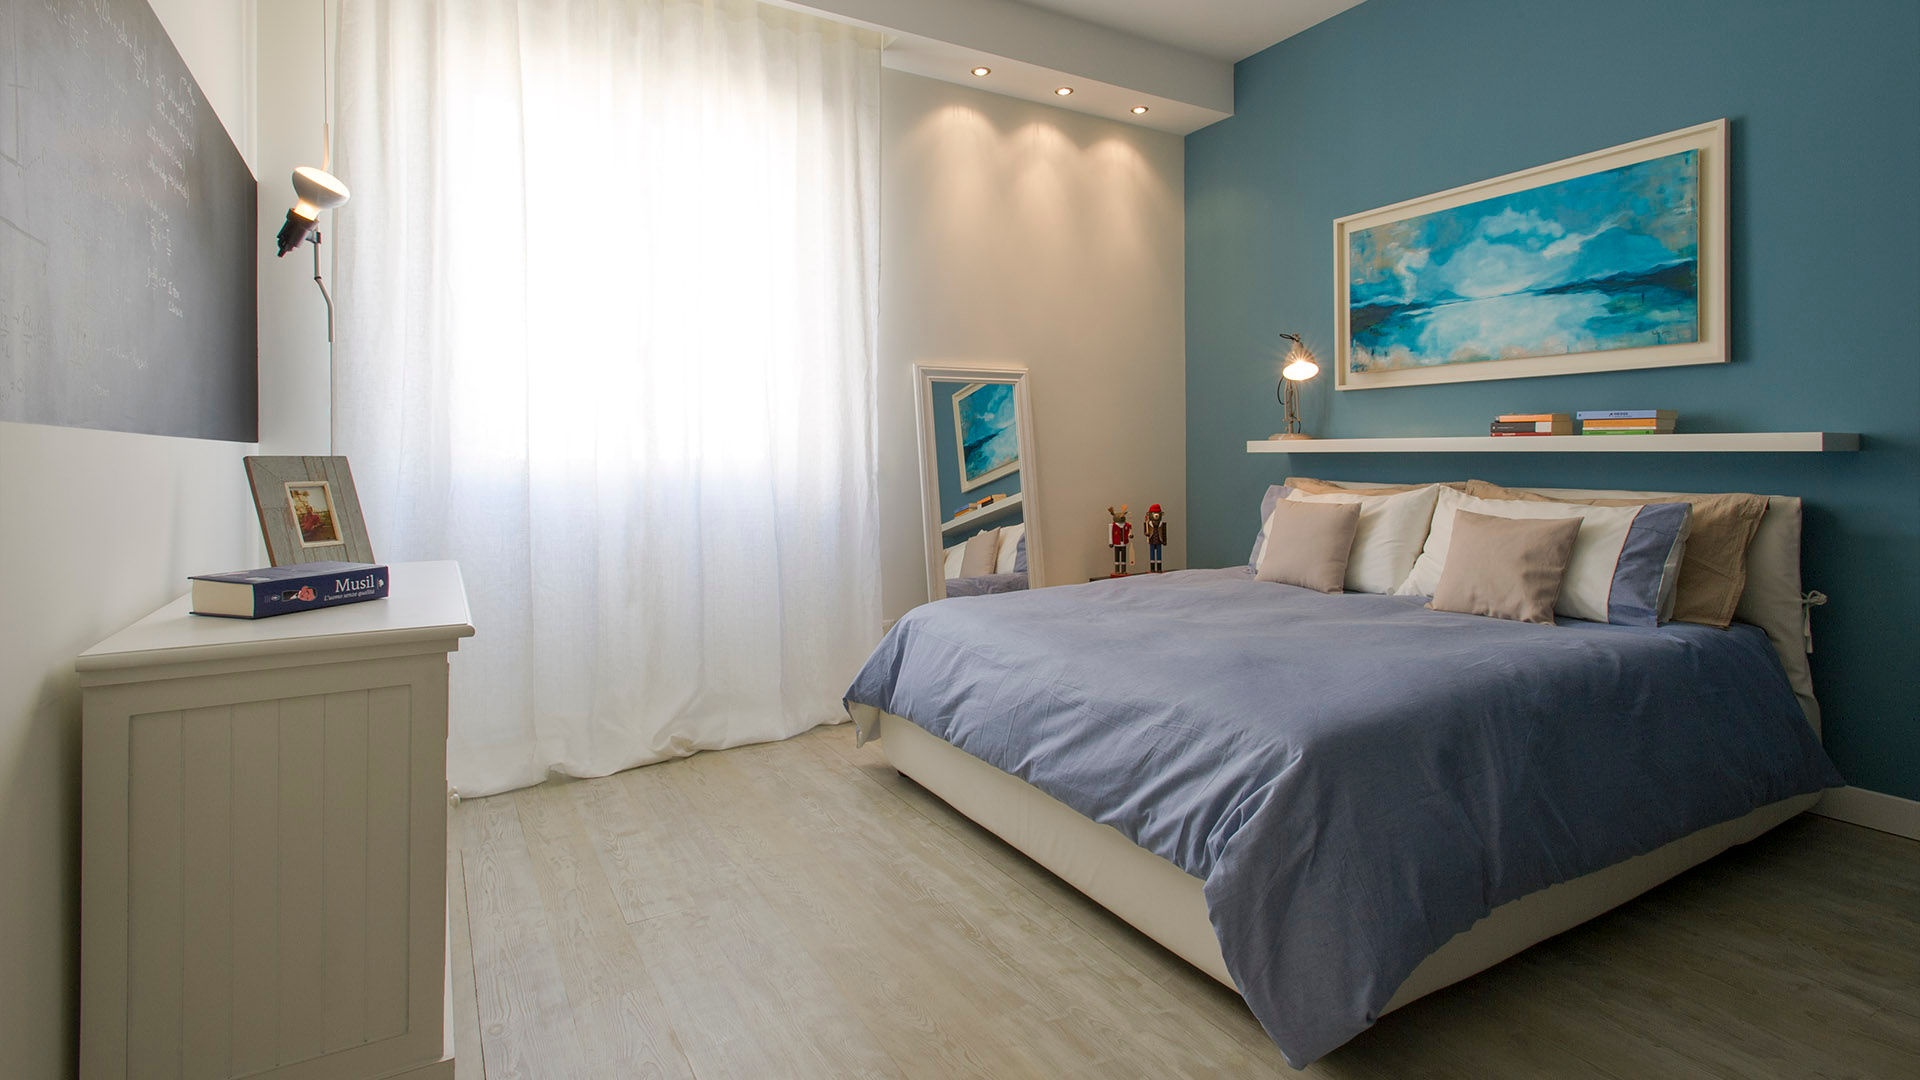 ​Appartamento al Gazometro Archifacturing Camera da letto moderna camera da letto,matrimoniale,toni caldi,letto,blu,tende